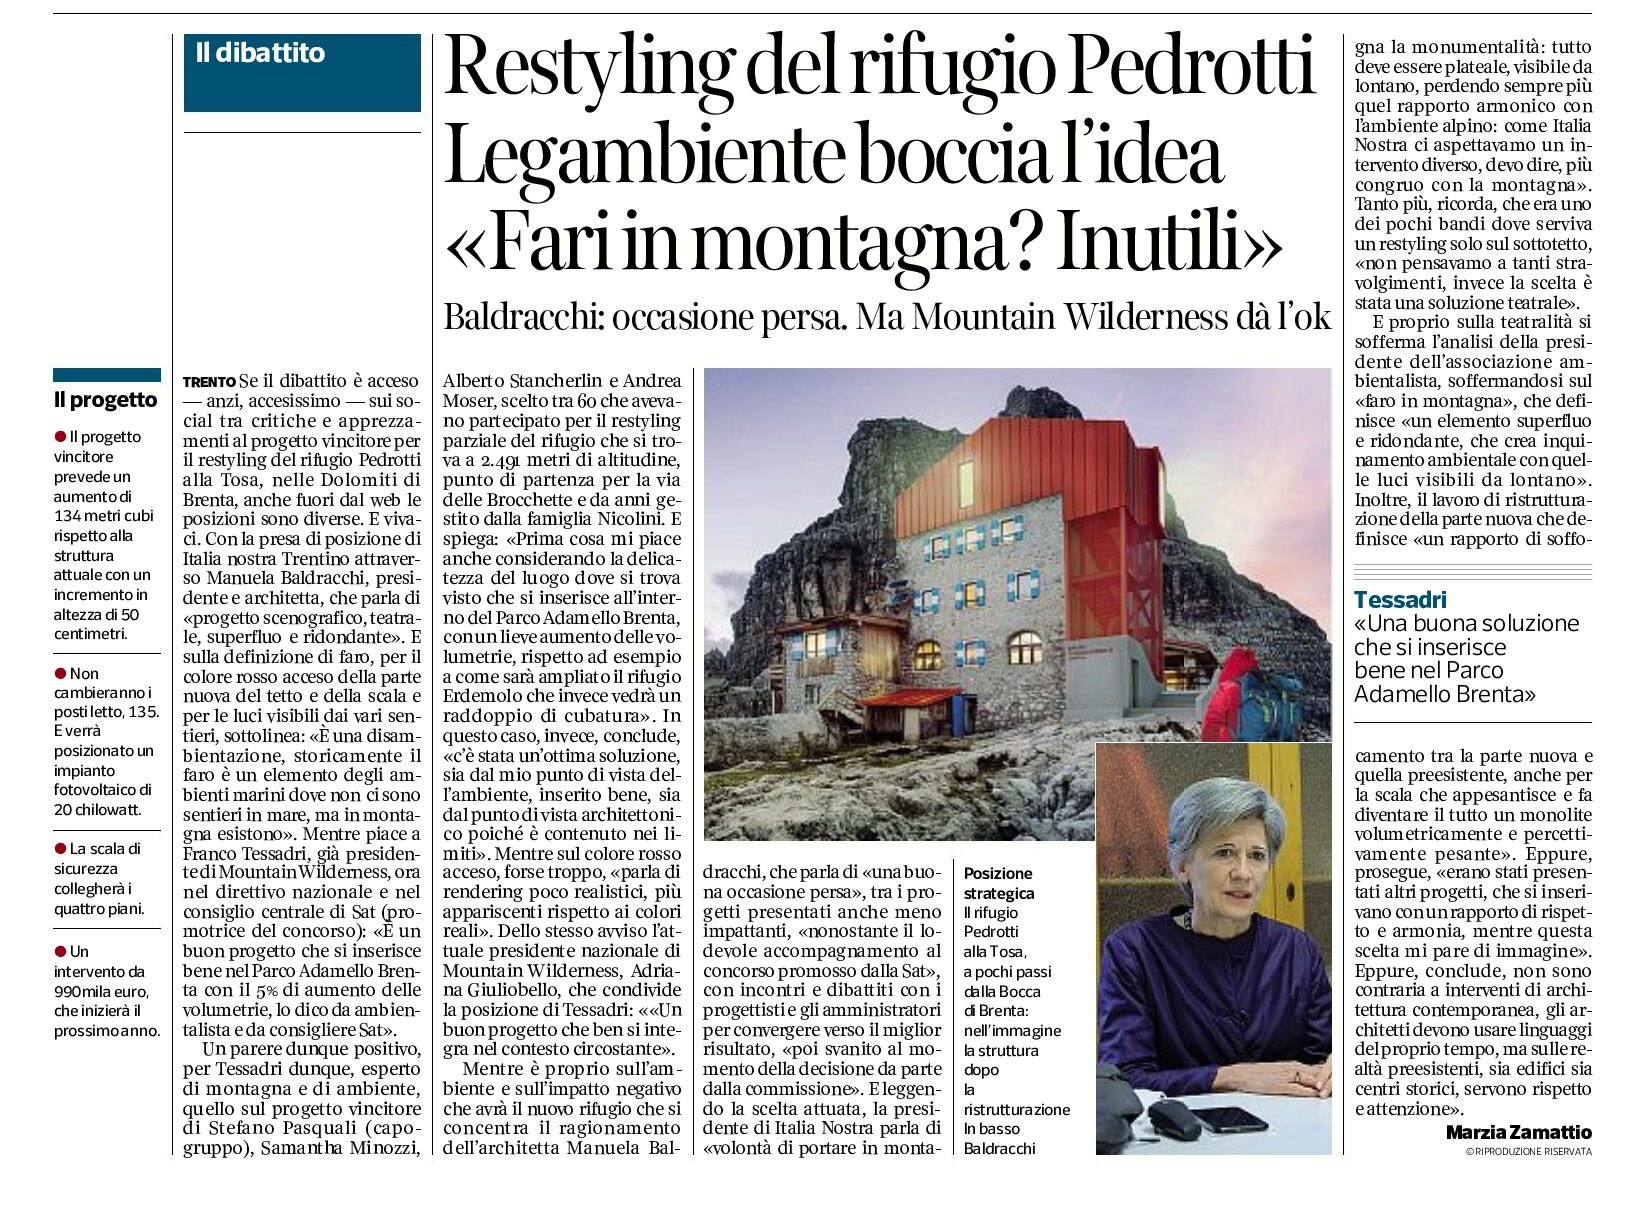 Restyling rifugio Pedrotti: Italia Nostra boccia l’idea. Fari in montagna, inutili